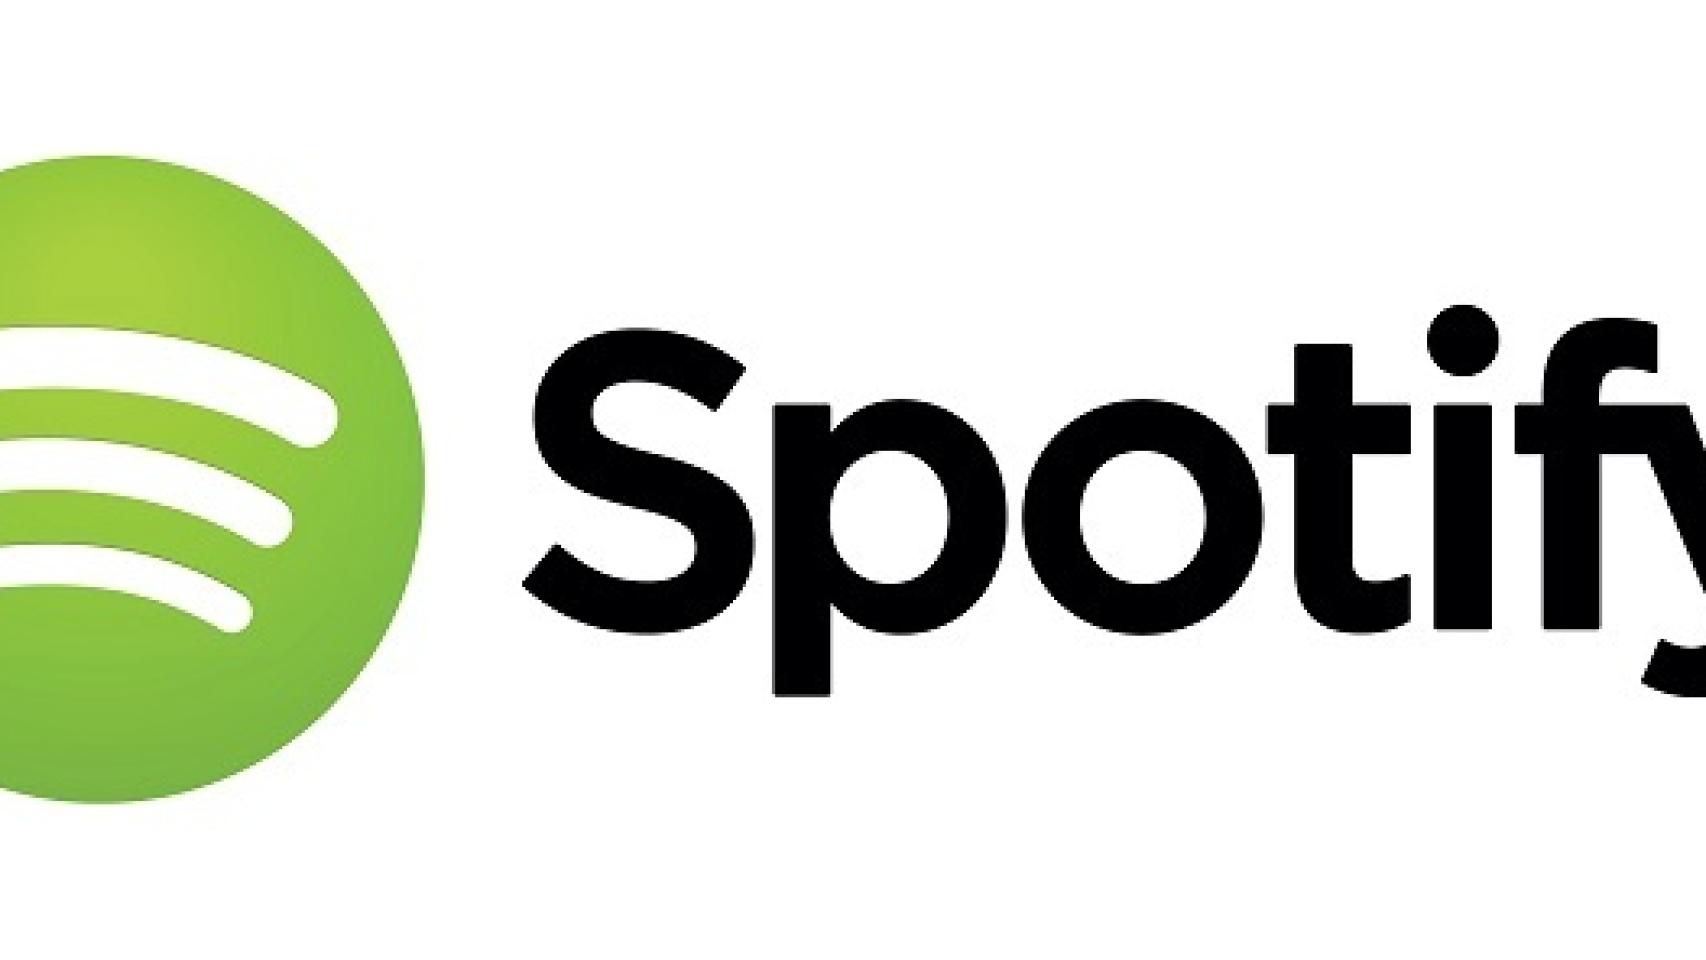 spotify-nuevo-logo-01